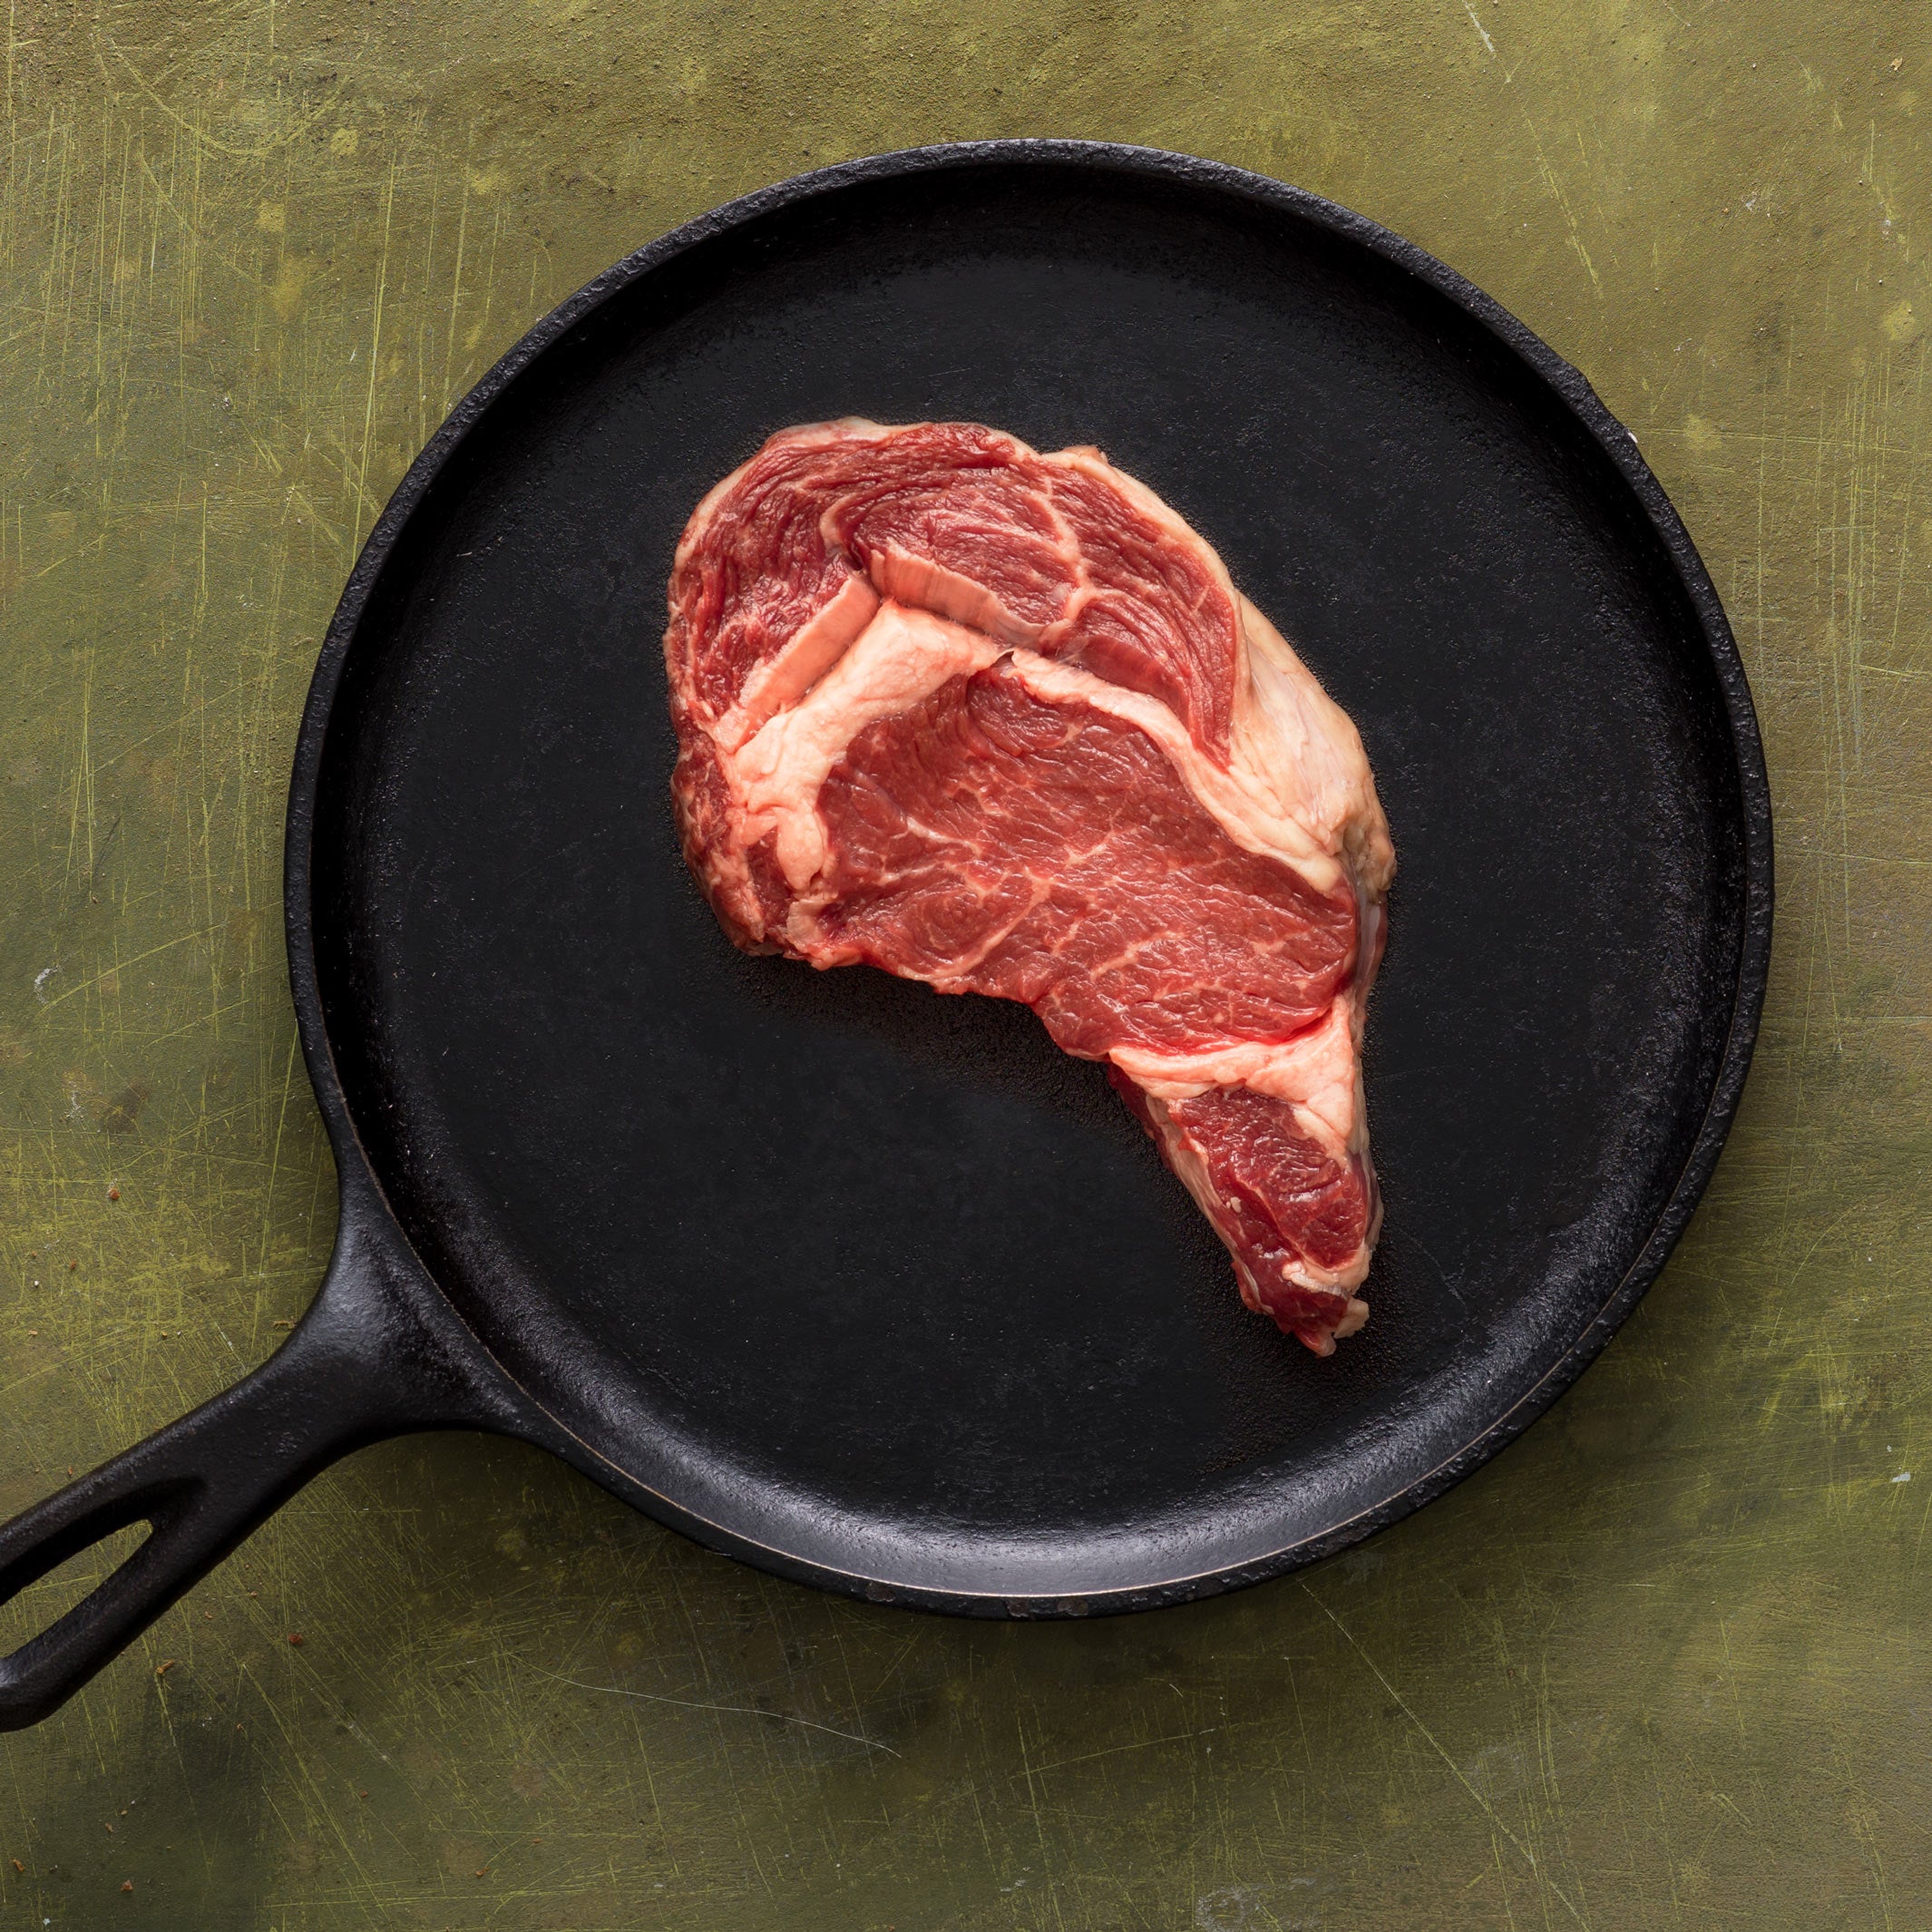 14 oz Grass-Fed Ribeye Steak